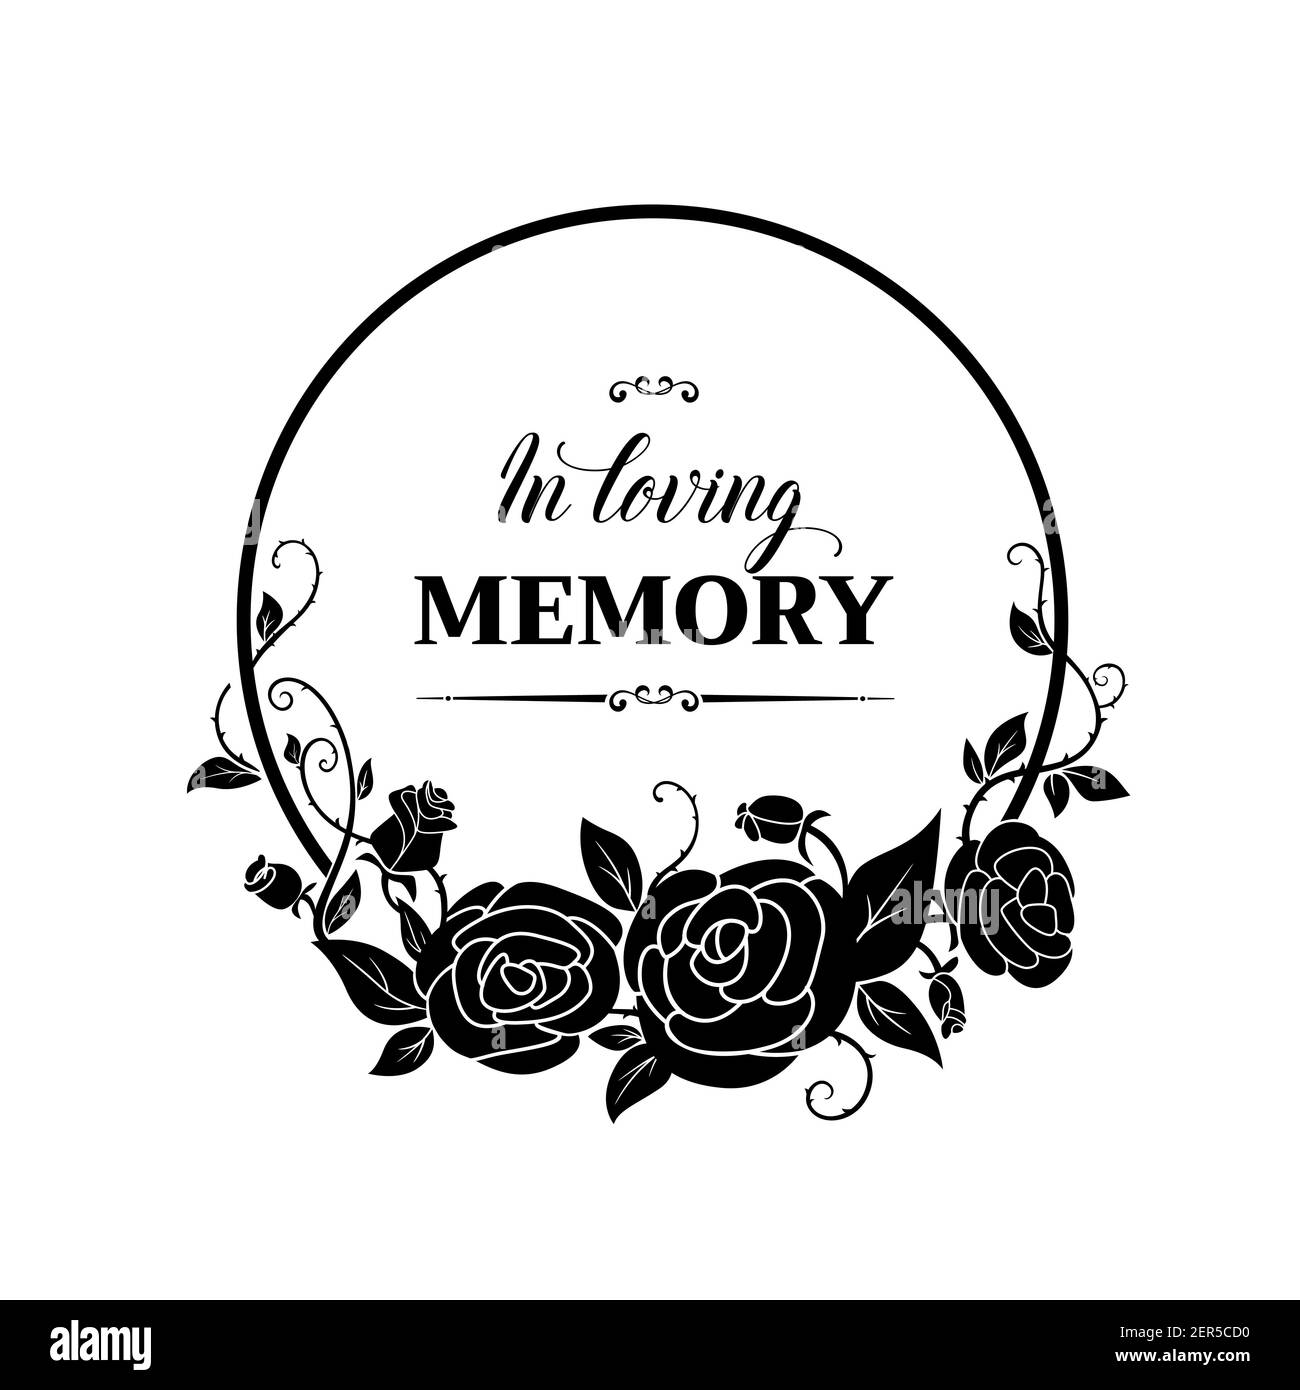 Cadre rond funéal avec fleurs de roses, épines et bourgeons. Carte vectorielle funéraire avec mémoire aimante condoléances typographie et ornement floral Illustration de Vecteur